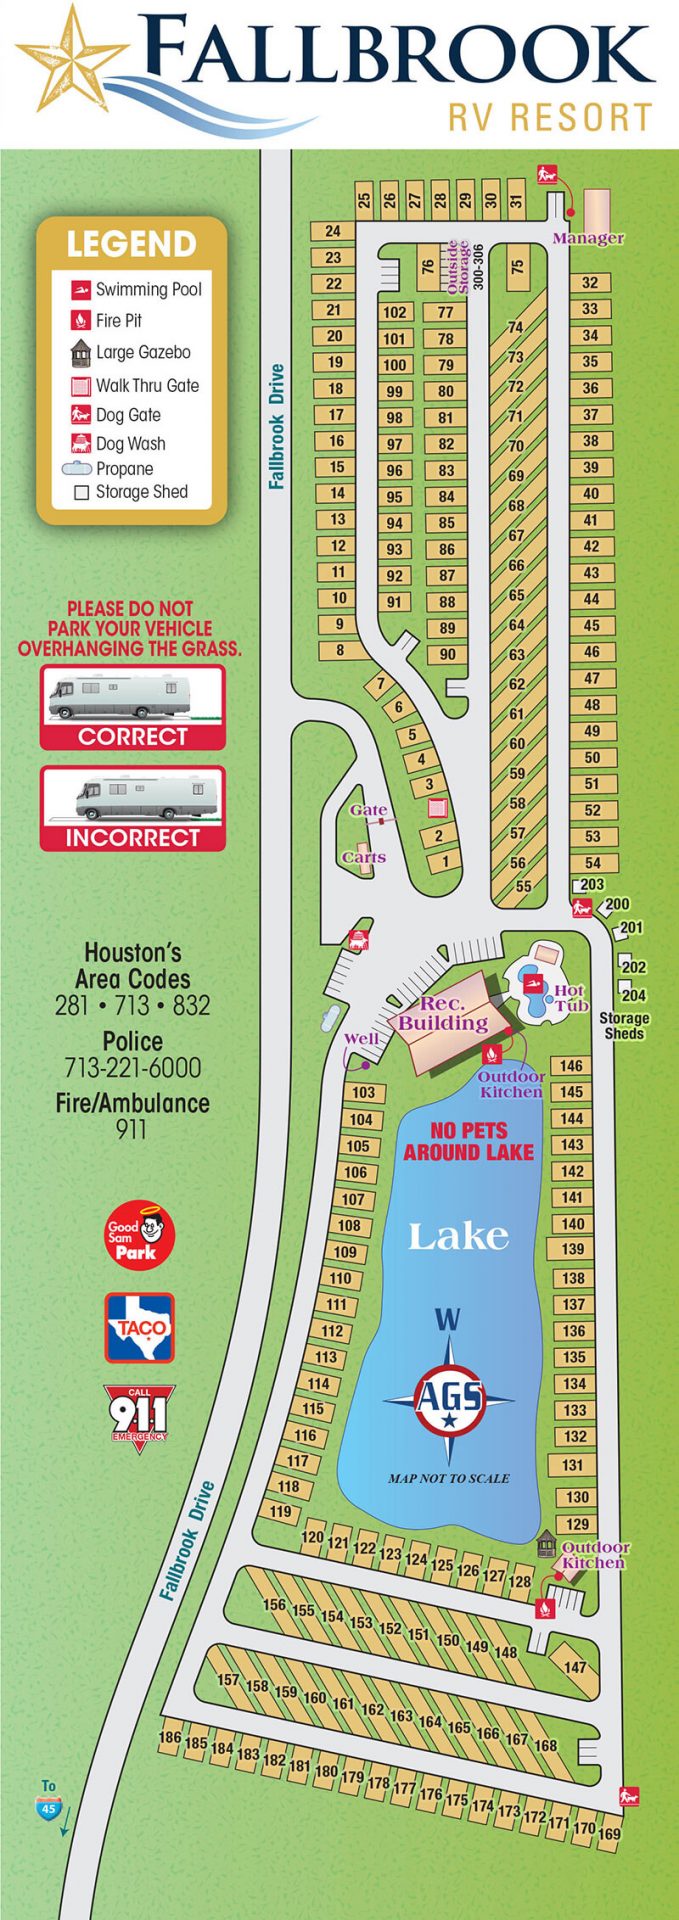 Fallbrook RV Resort Park Map